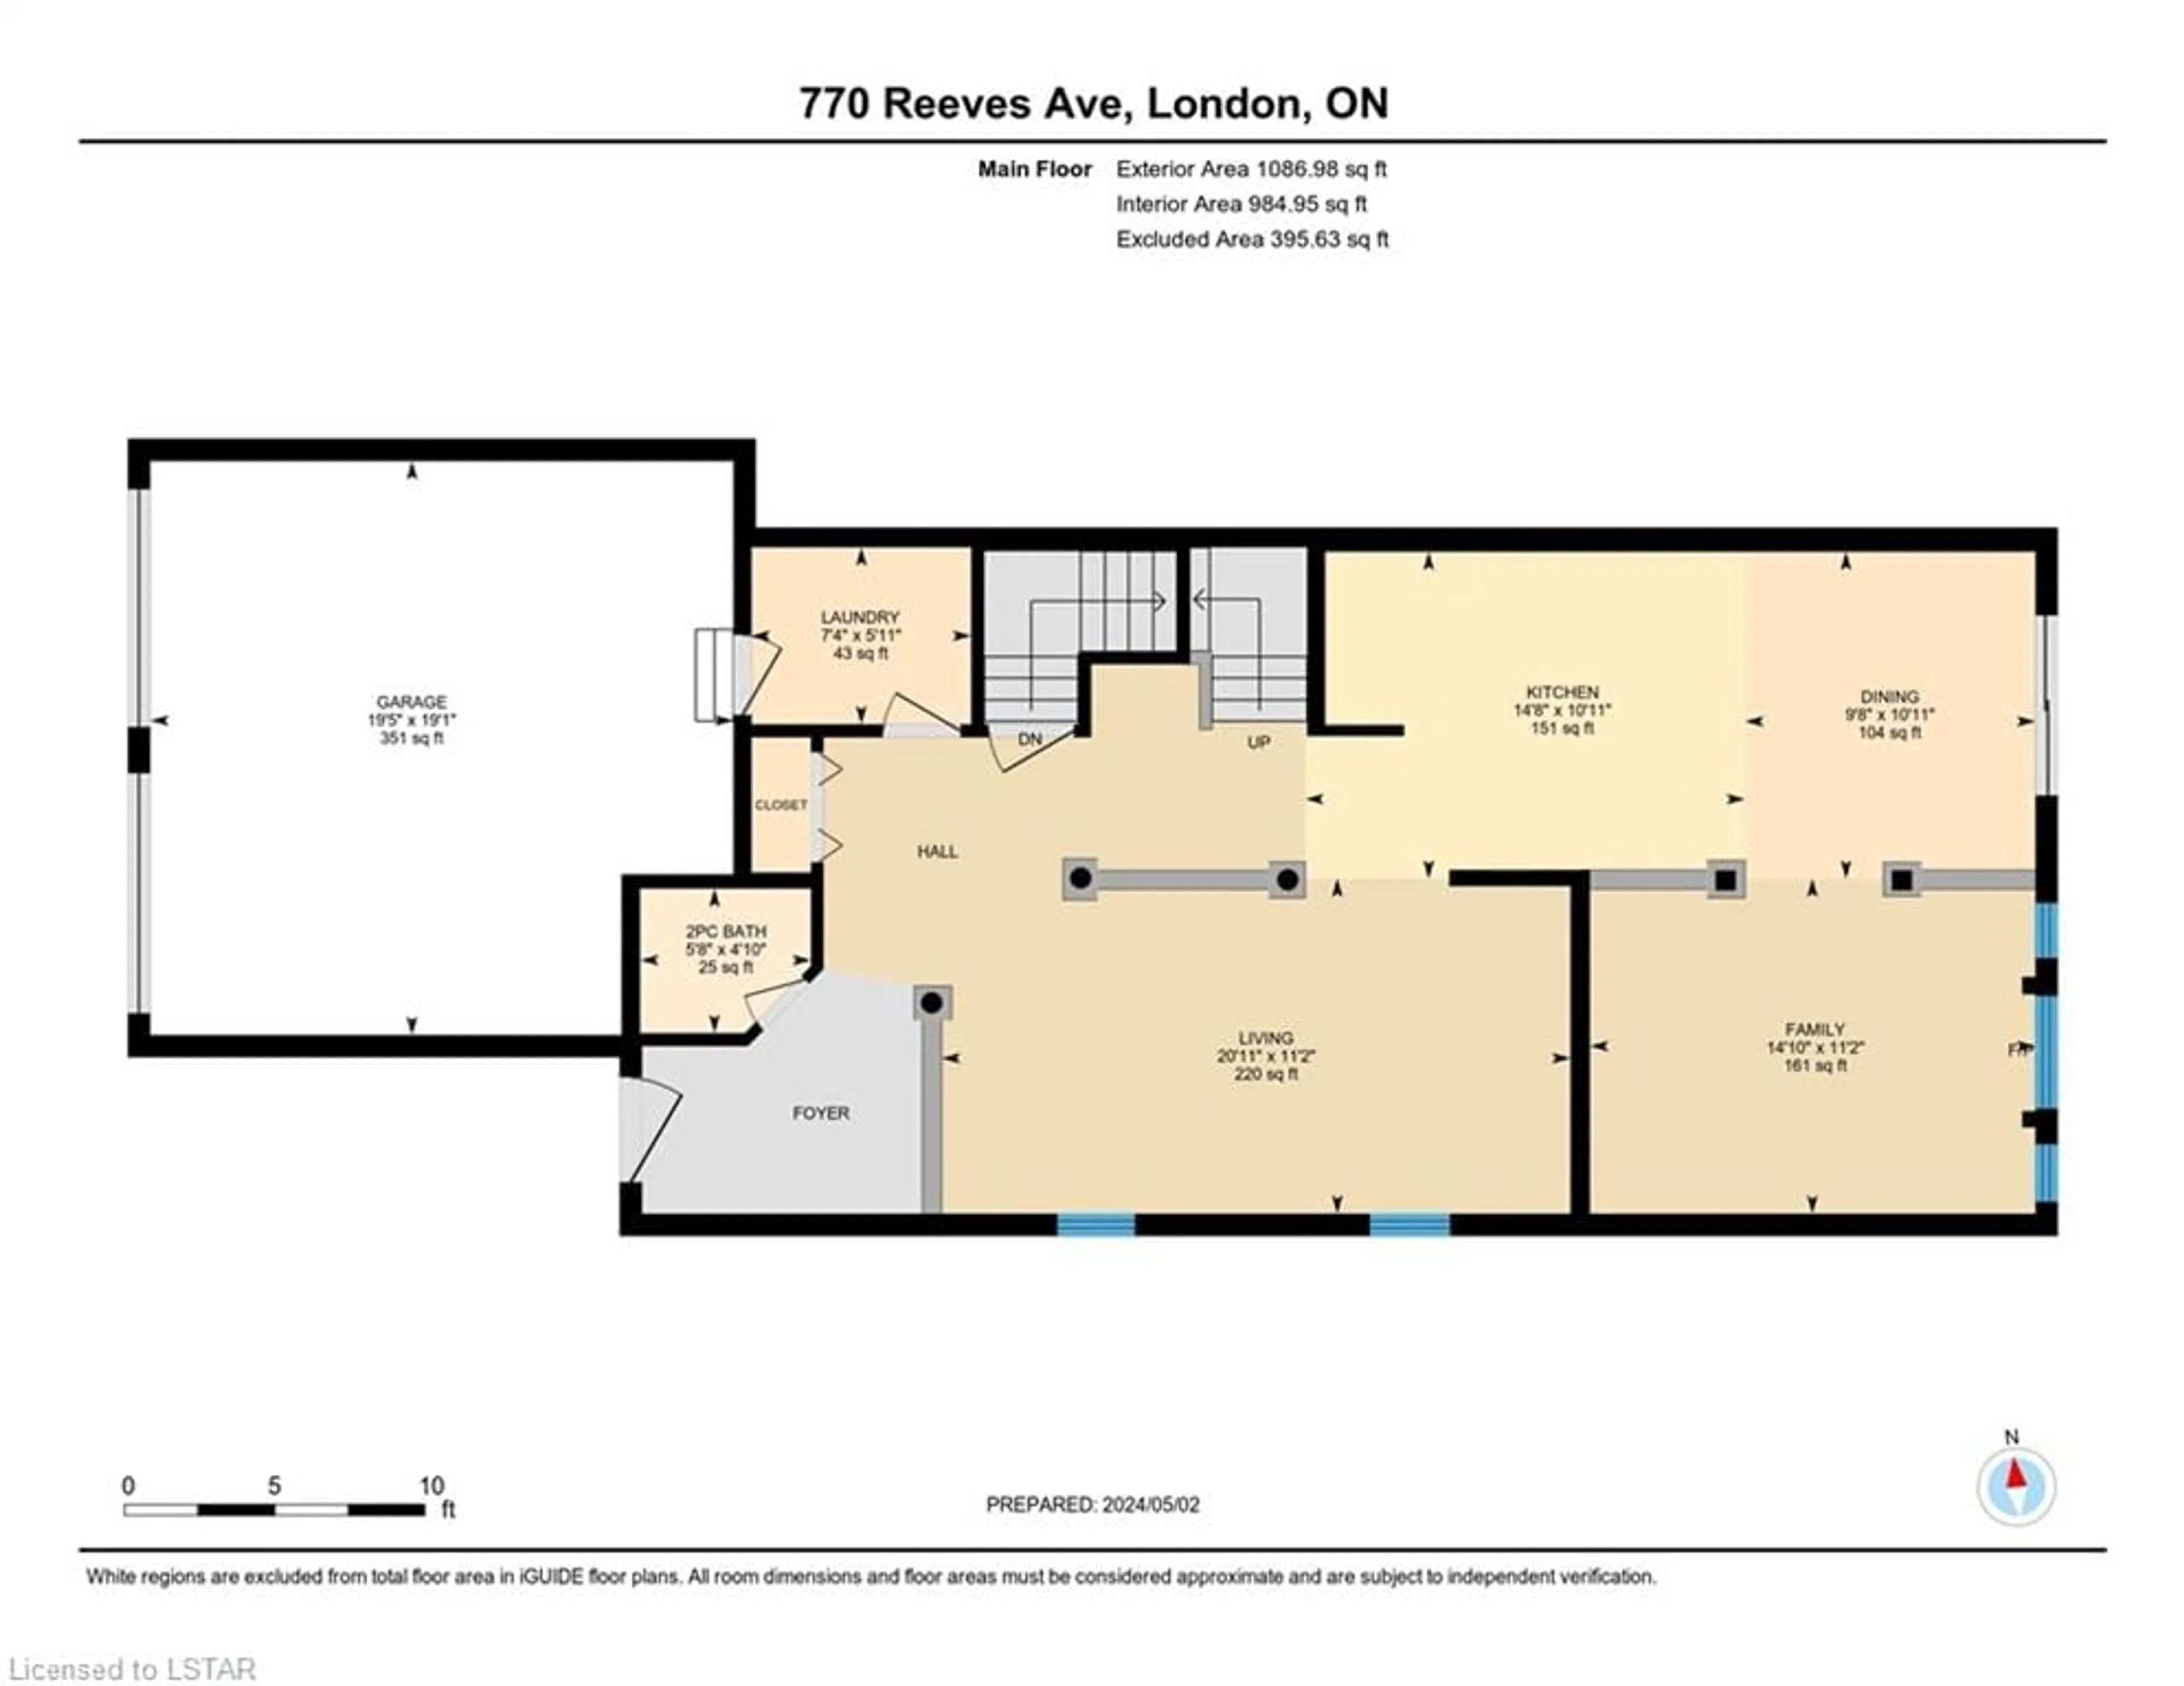 Floor plan for 770 Reeves Ave, London Ontario N6G 5K3